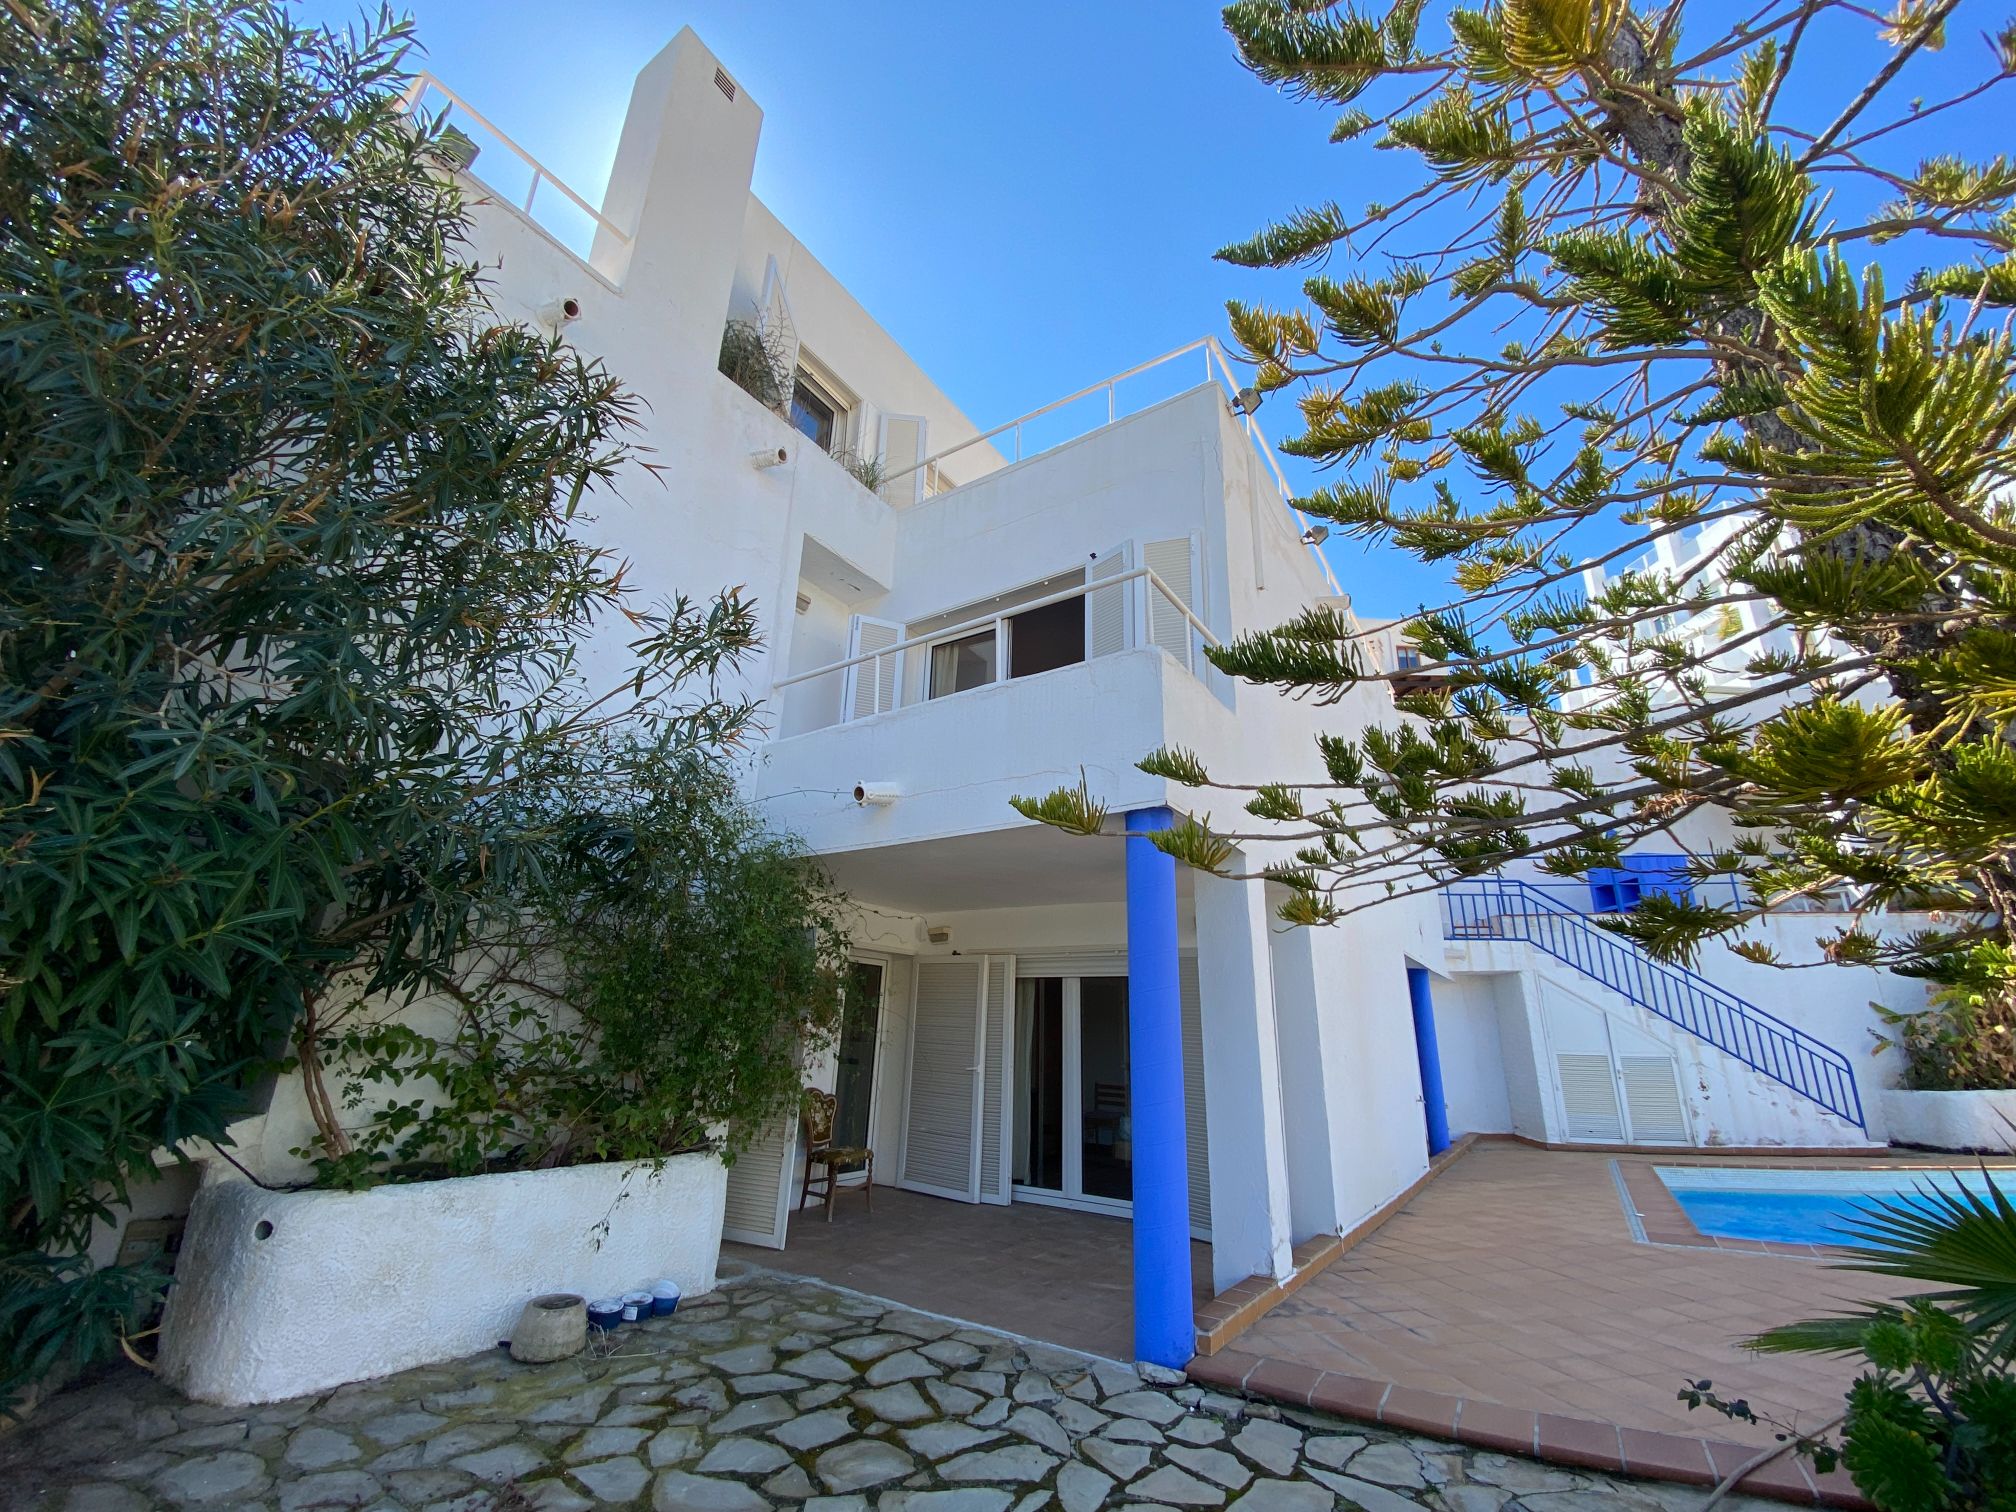 Villa for sale in Mojacar är Roquetas de Mar 1